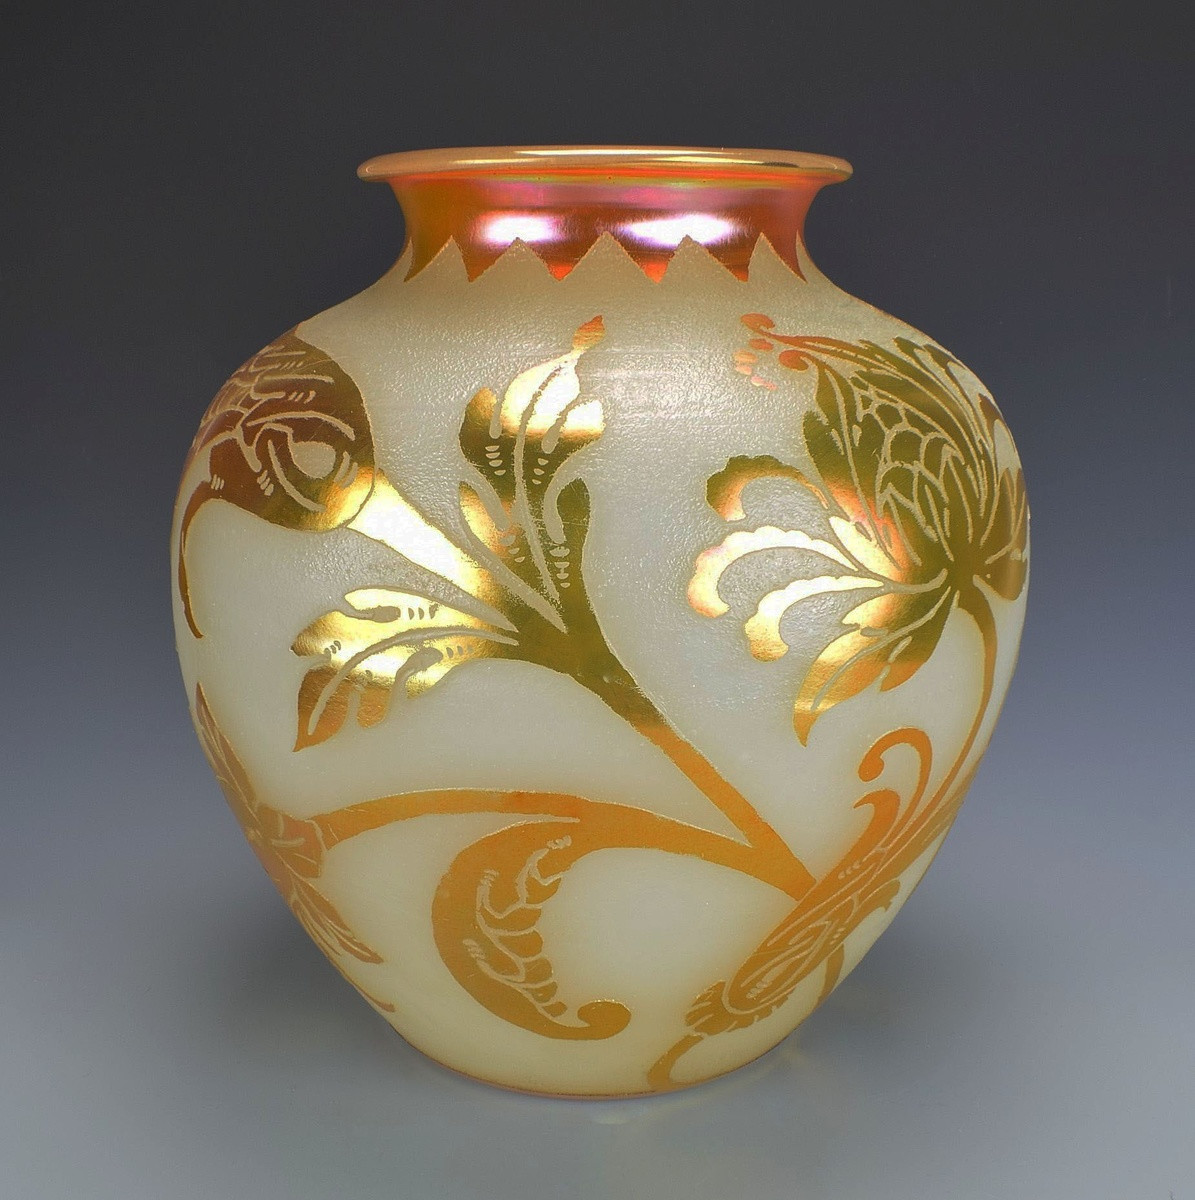 15 Stunning Steuben Vase Value 2024 free download steuben vase value of steuben gold aurene over alabaster vase collectors weekly within gwda510mggzvum7tl cqcq